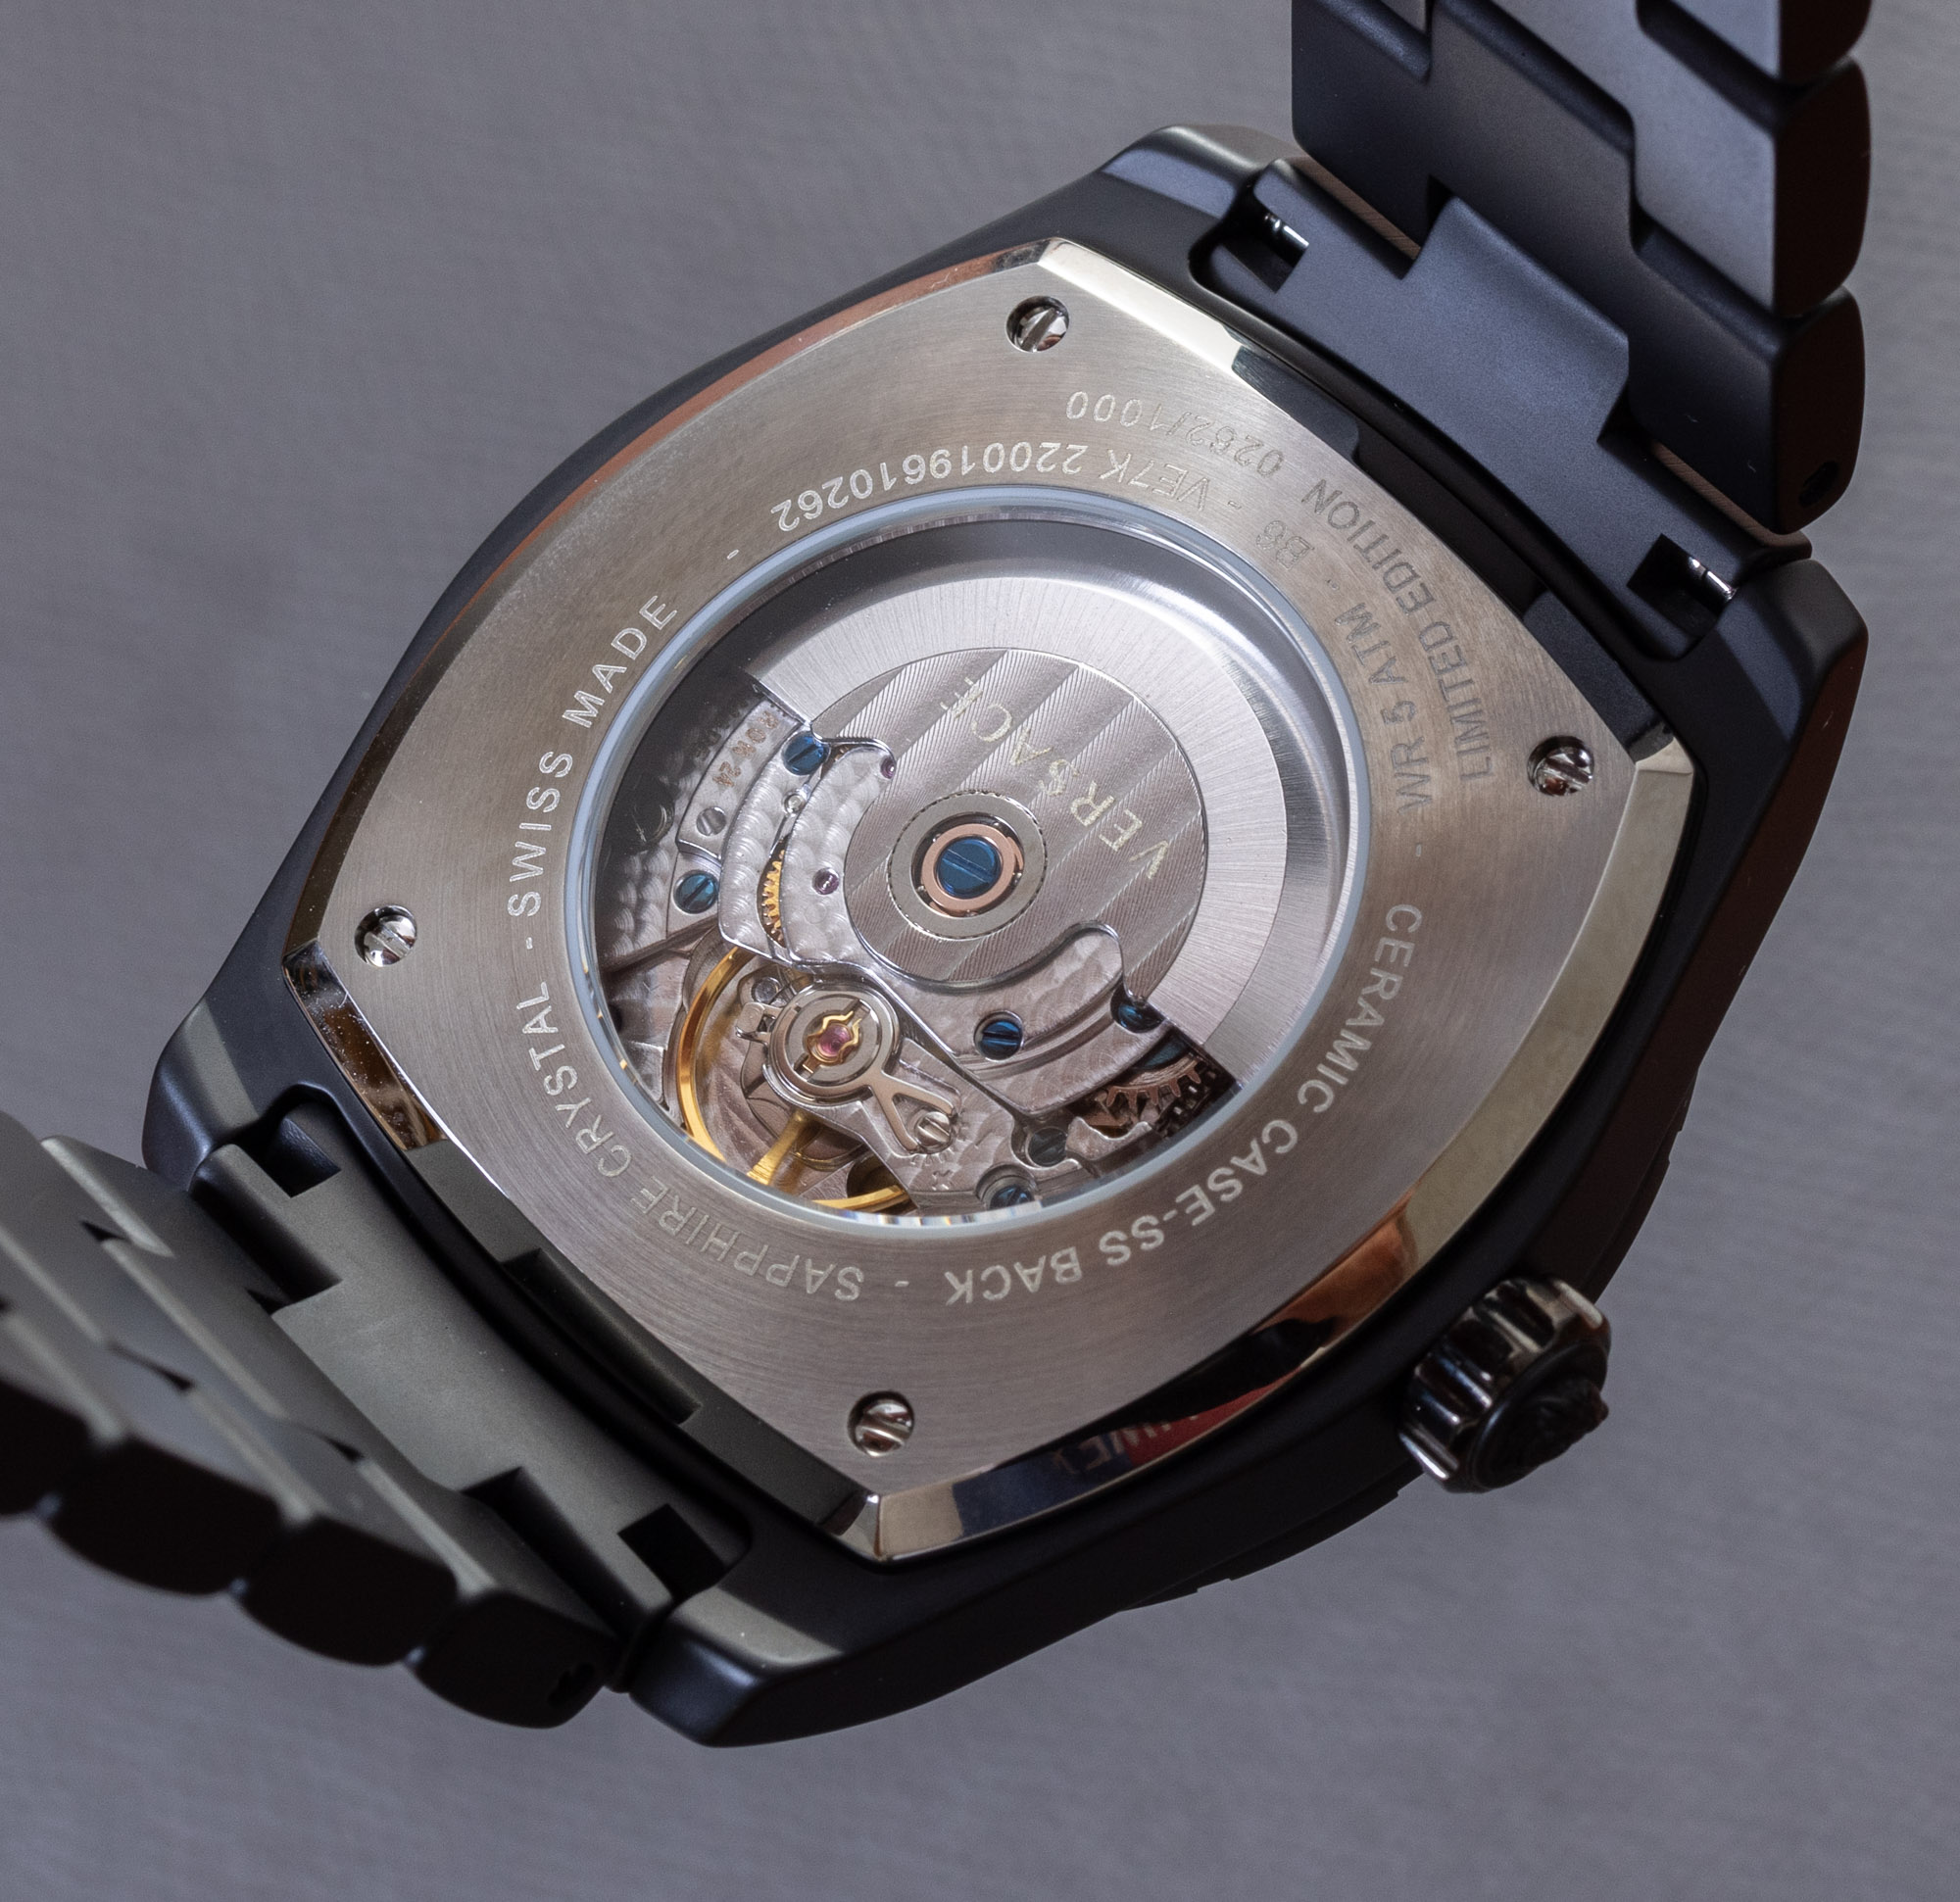 Обзор часов: Керамические мужские часы Versace DV ONE Automatic